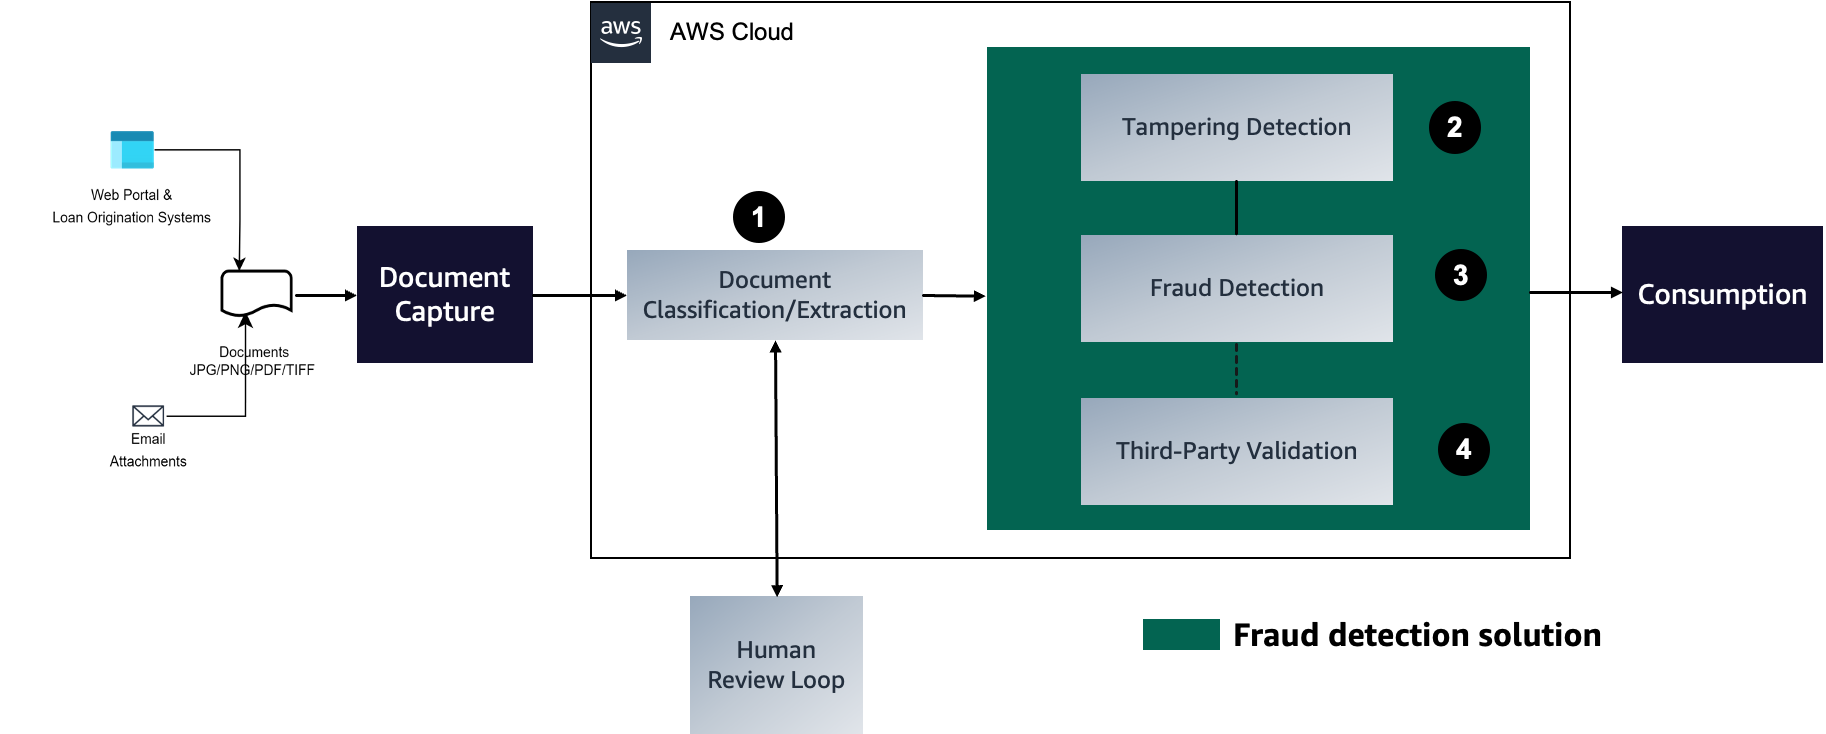 أتمتة الكشف عن الاحتيال في مستندات الرهن العقاري باستخدام نموذج التعلم الآلي والقواعد المحددة للأعمال باستخدام Amazon Fraud Detector: الجزء 3 | خدمات الويب الأمازون